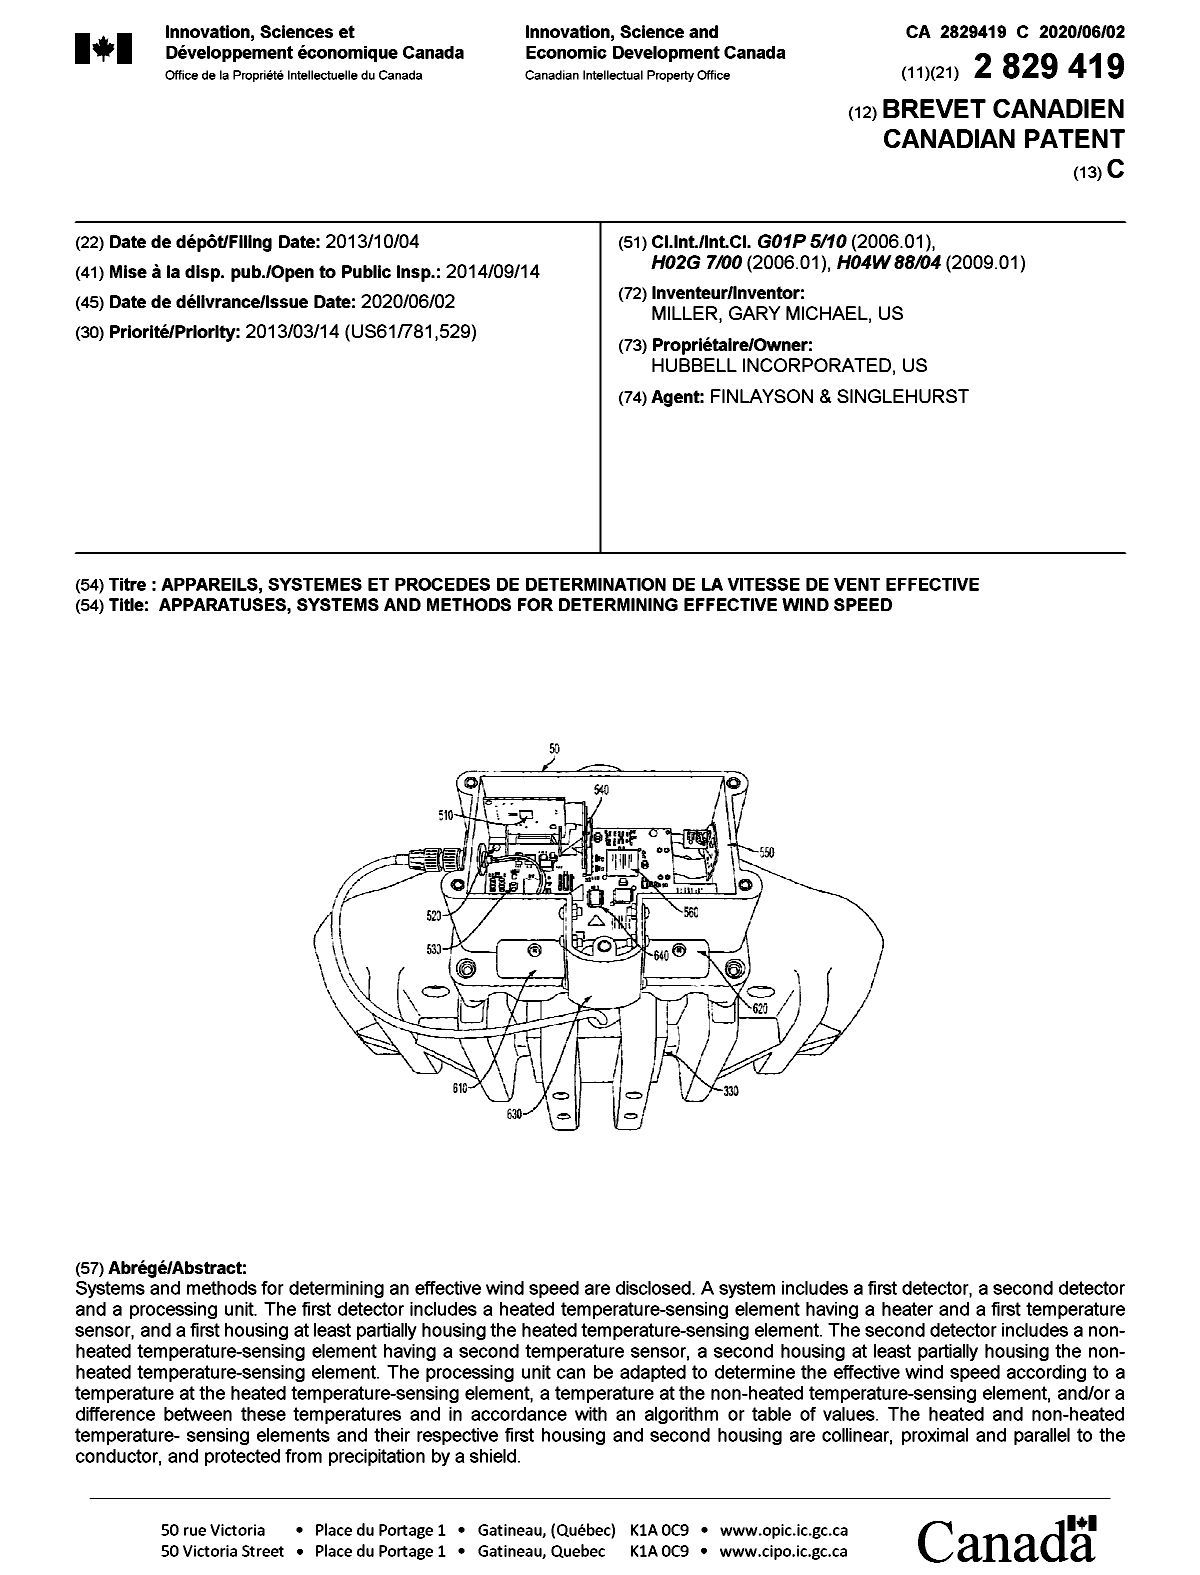 Document de brevet canadien 2829419. Page couverture 20200504. Image 1 de 1